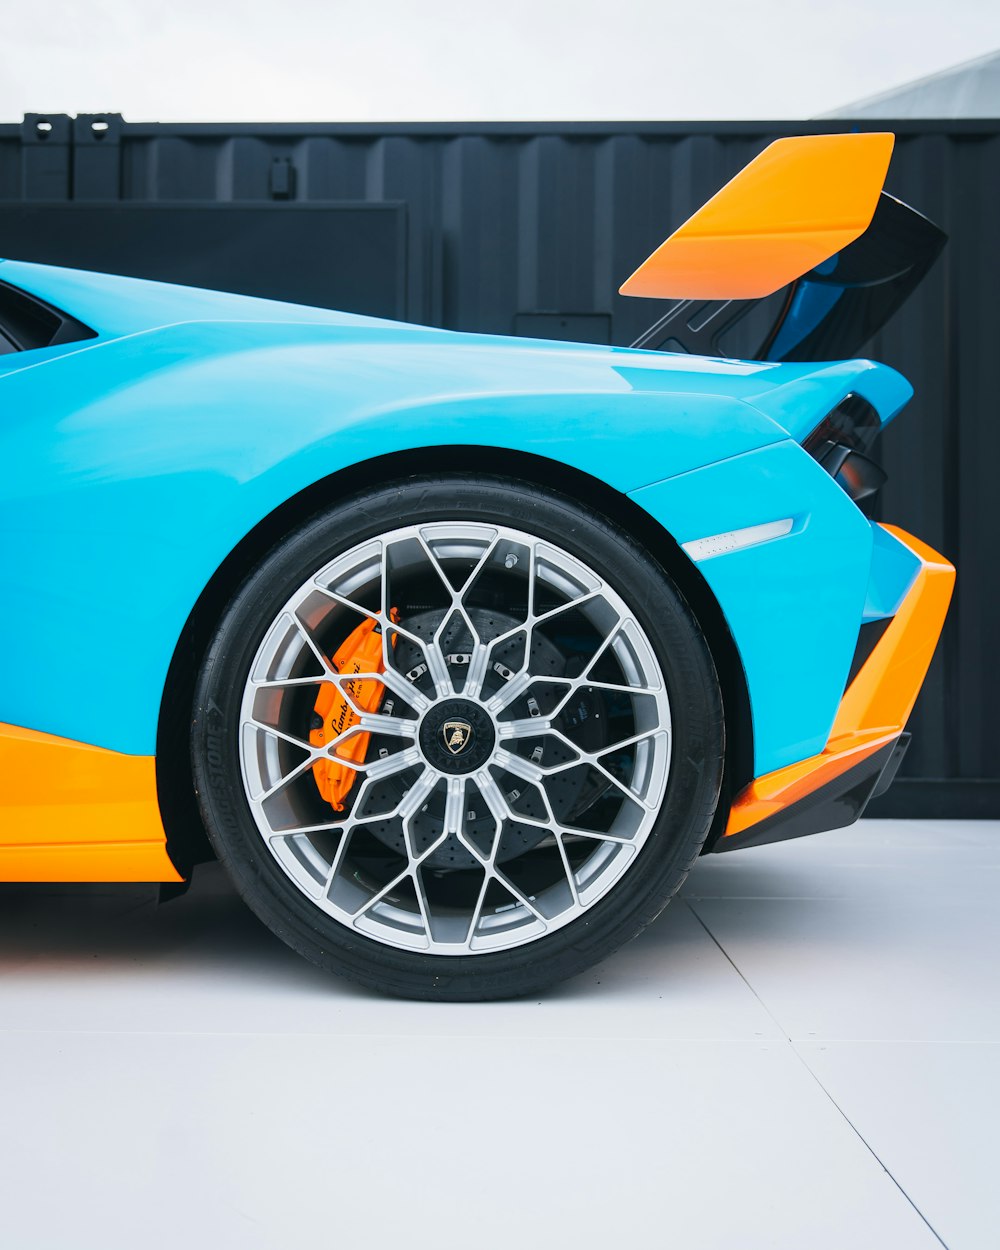 Une voiture de sport bleue et orange garée dans un garage